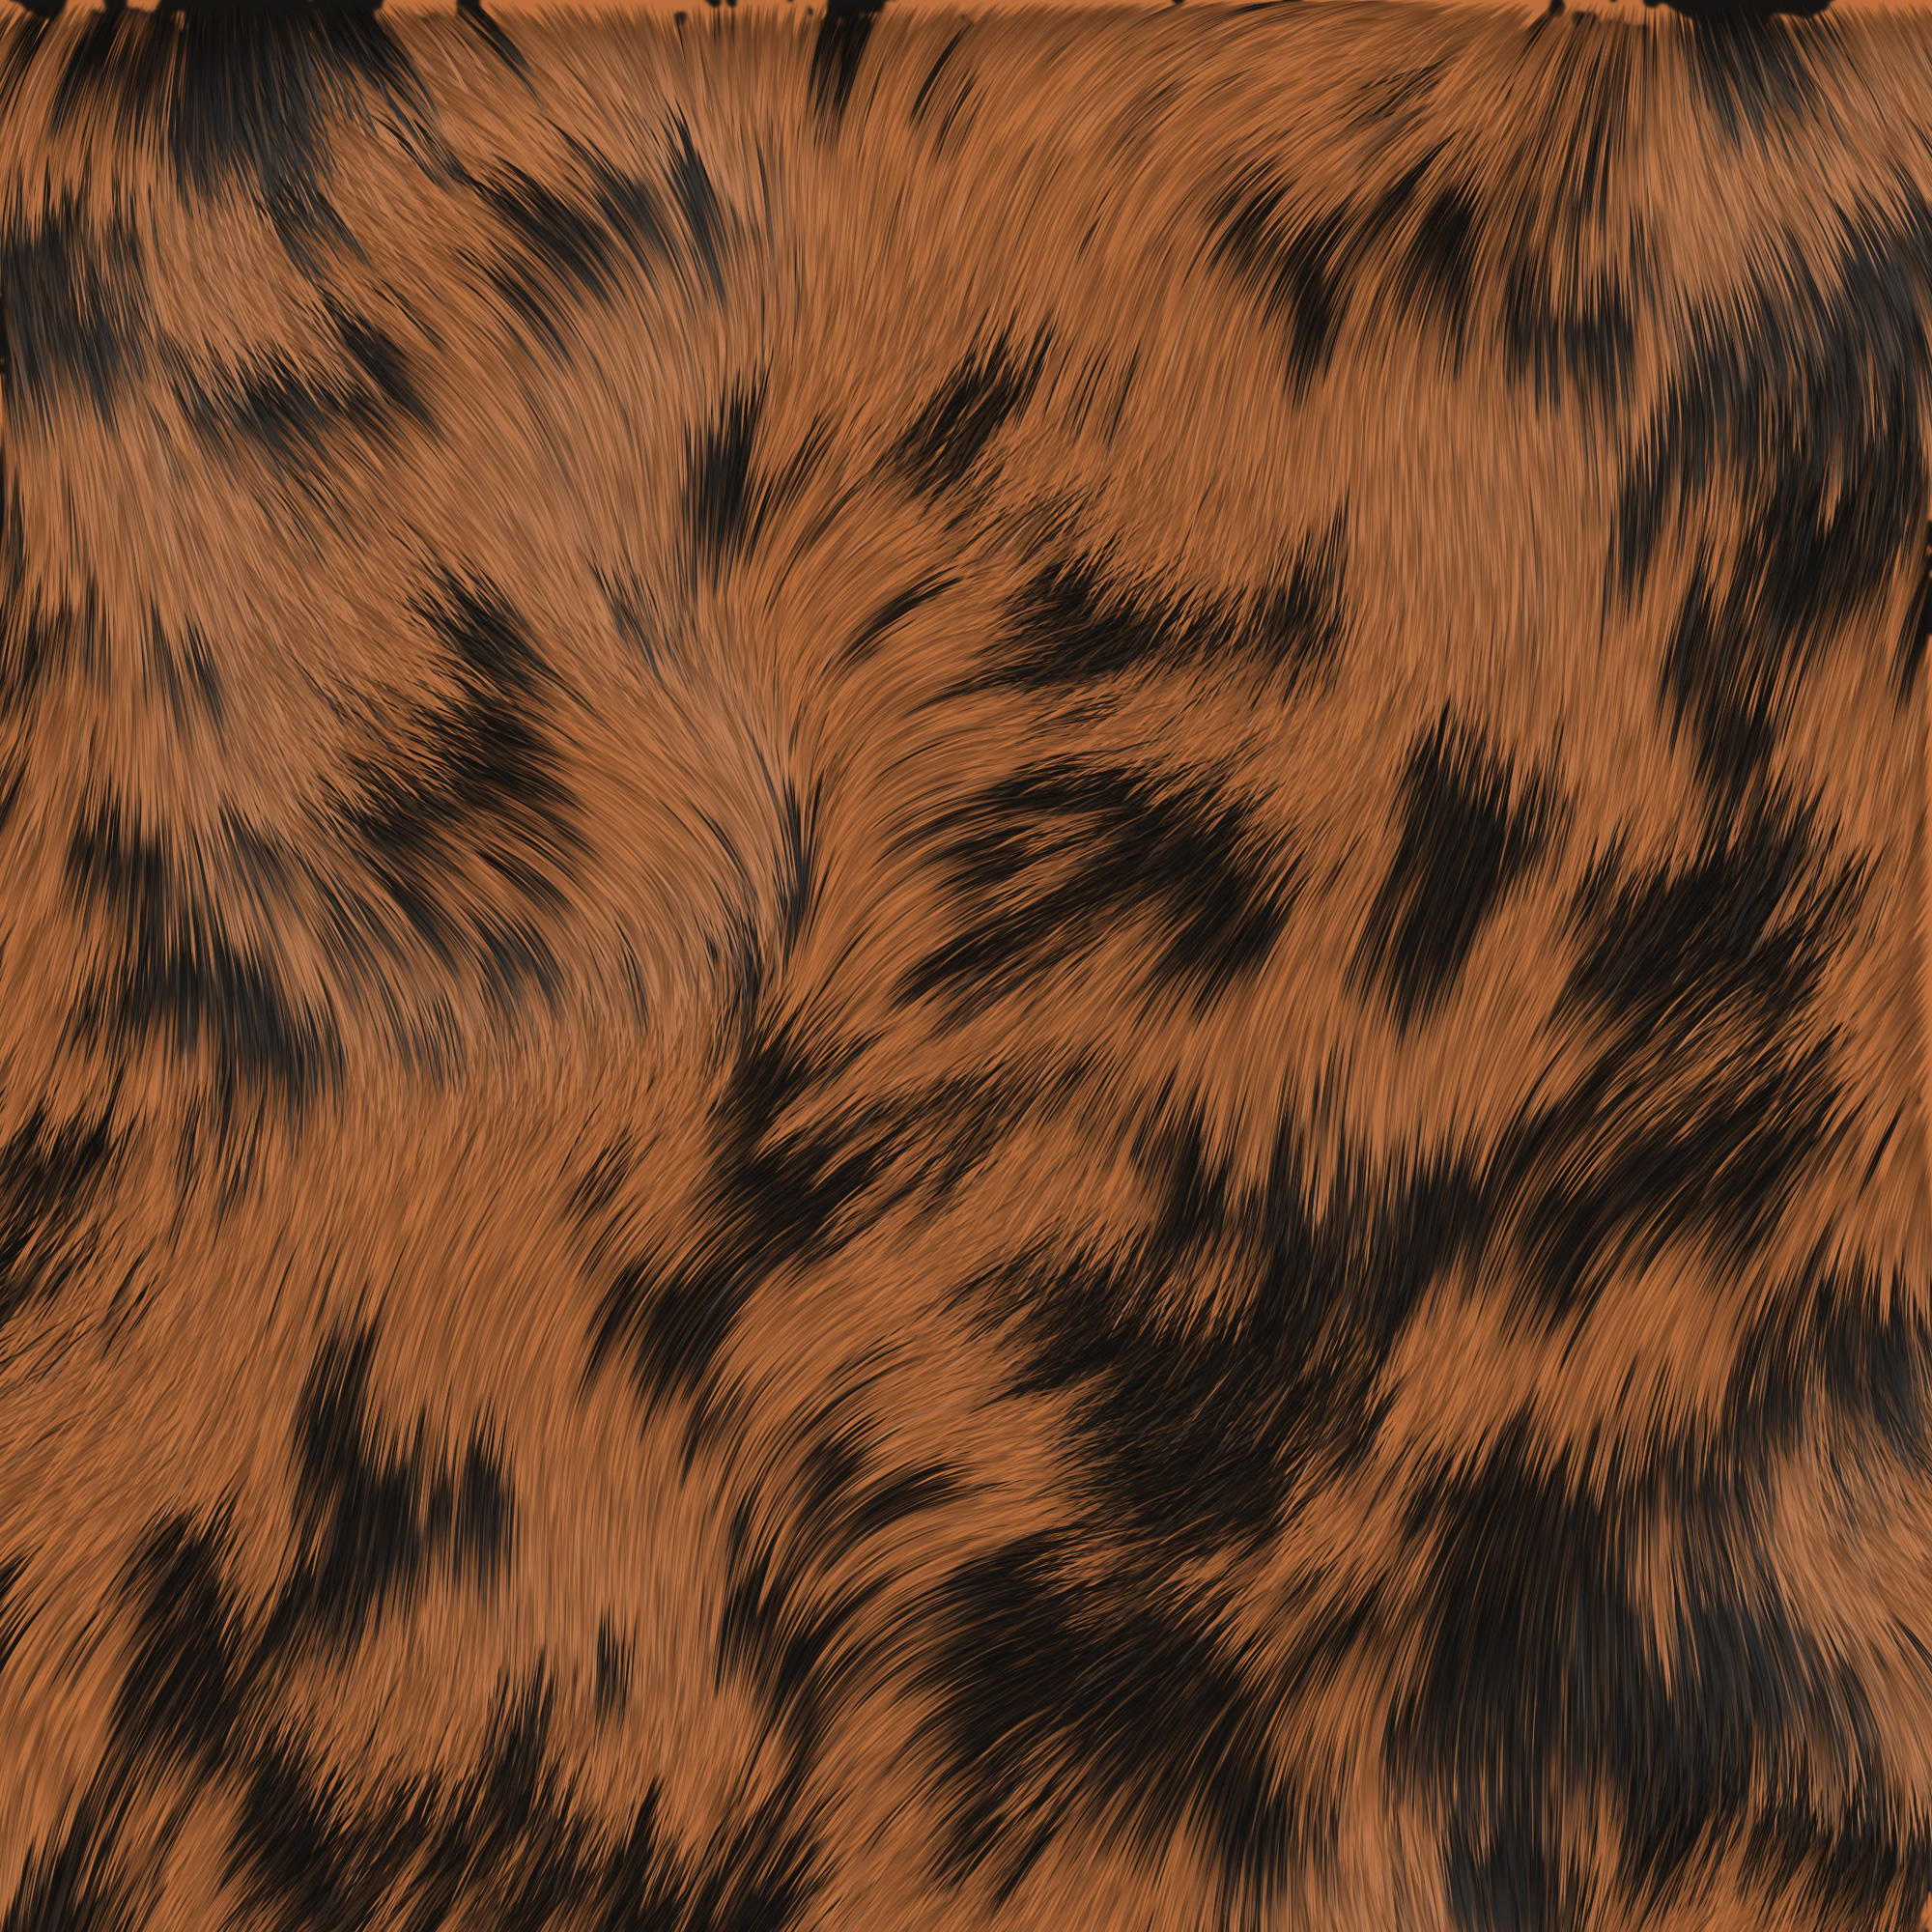 animal texture, background, шкура животного текстура, фон